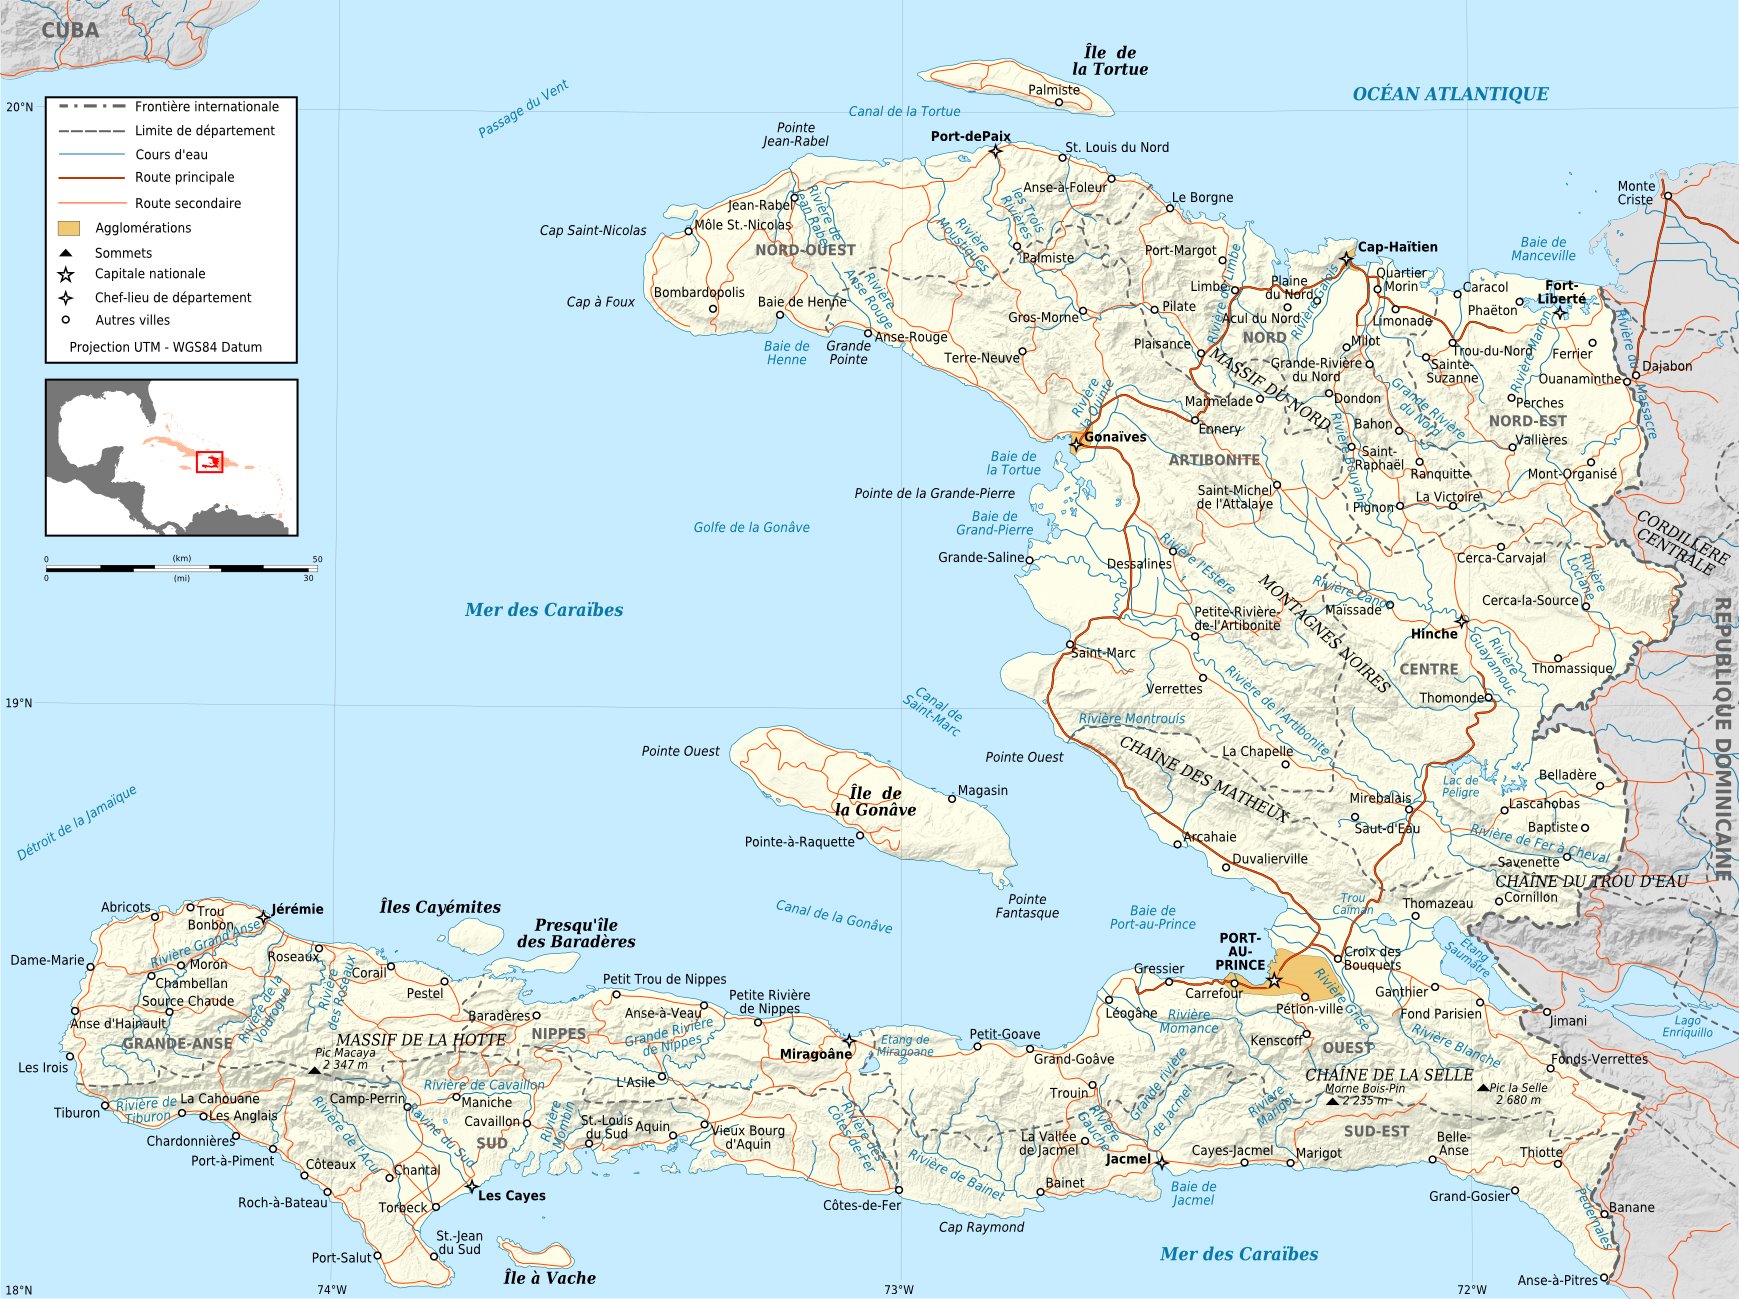 travel.state.gov haiti